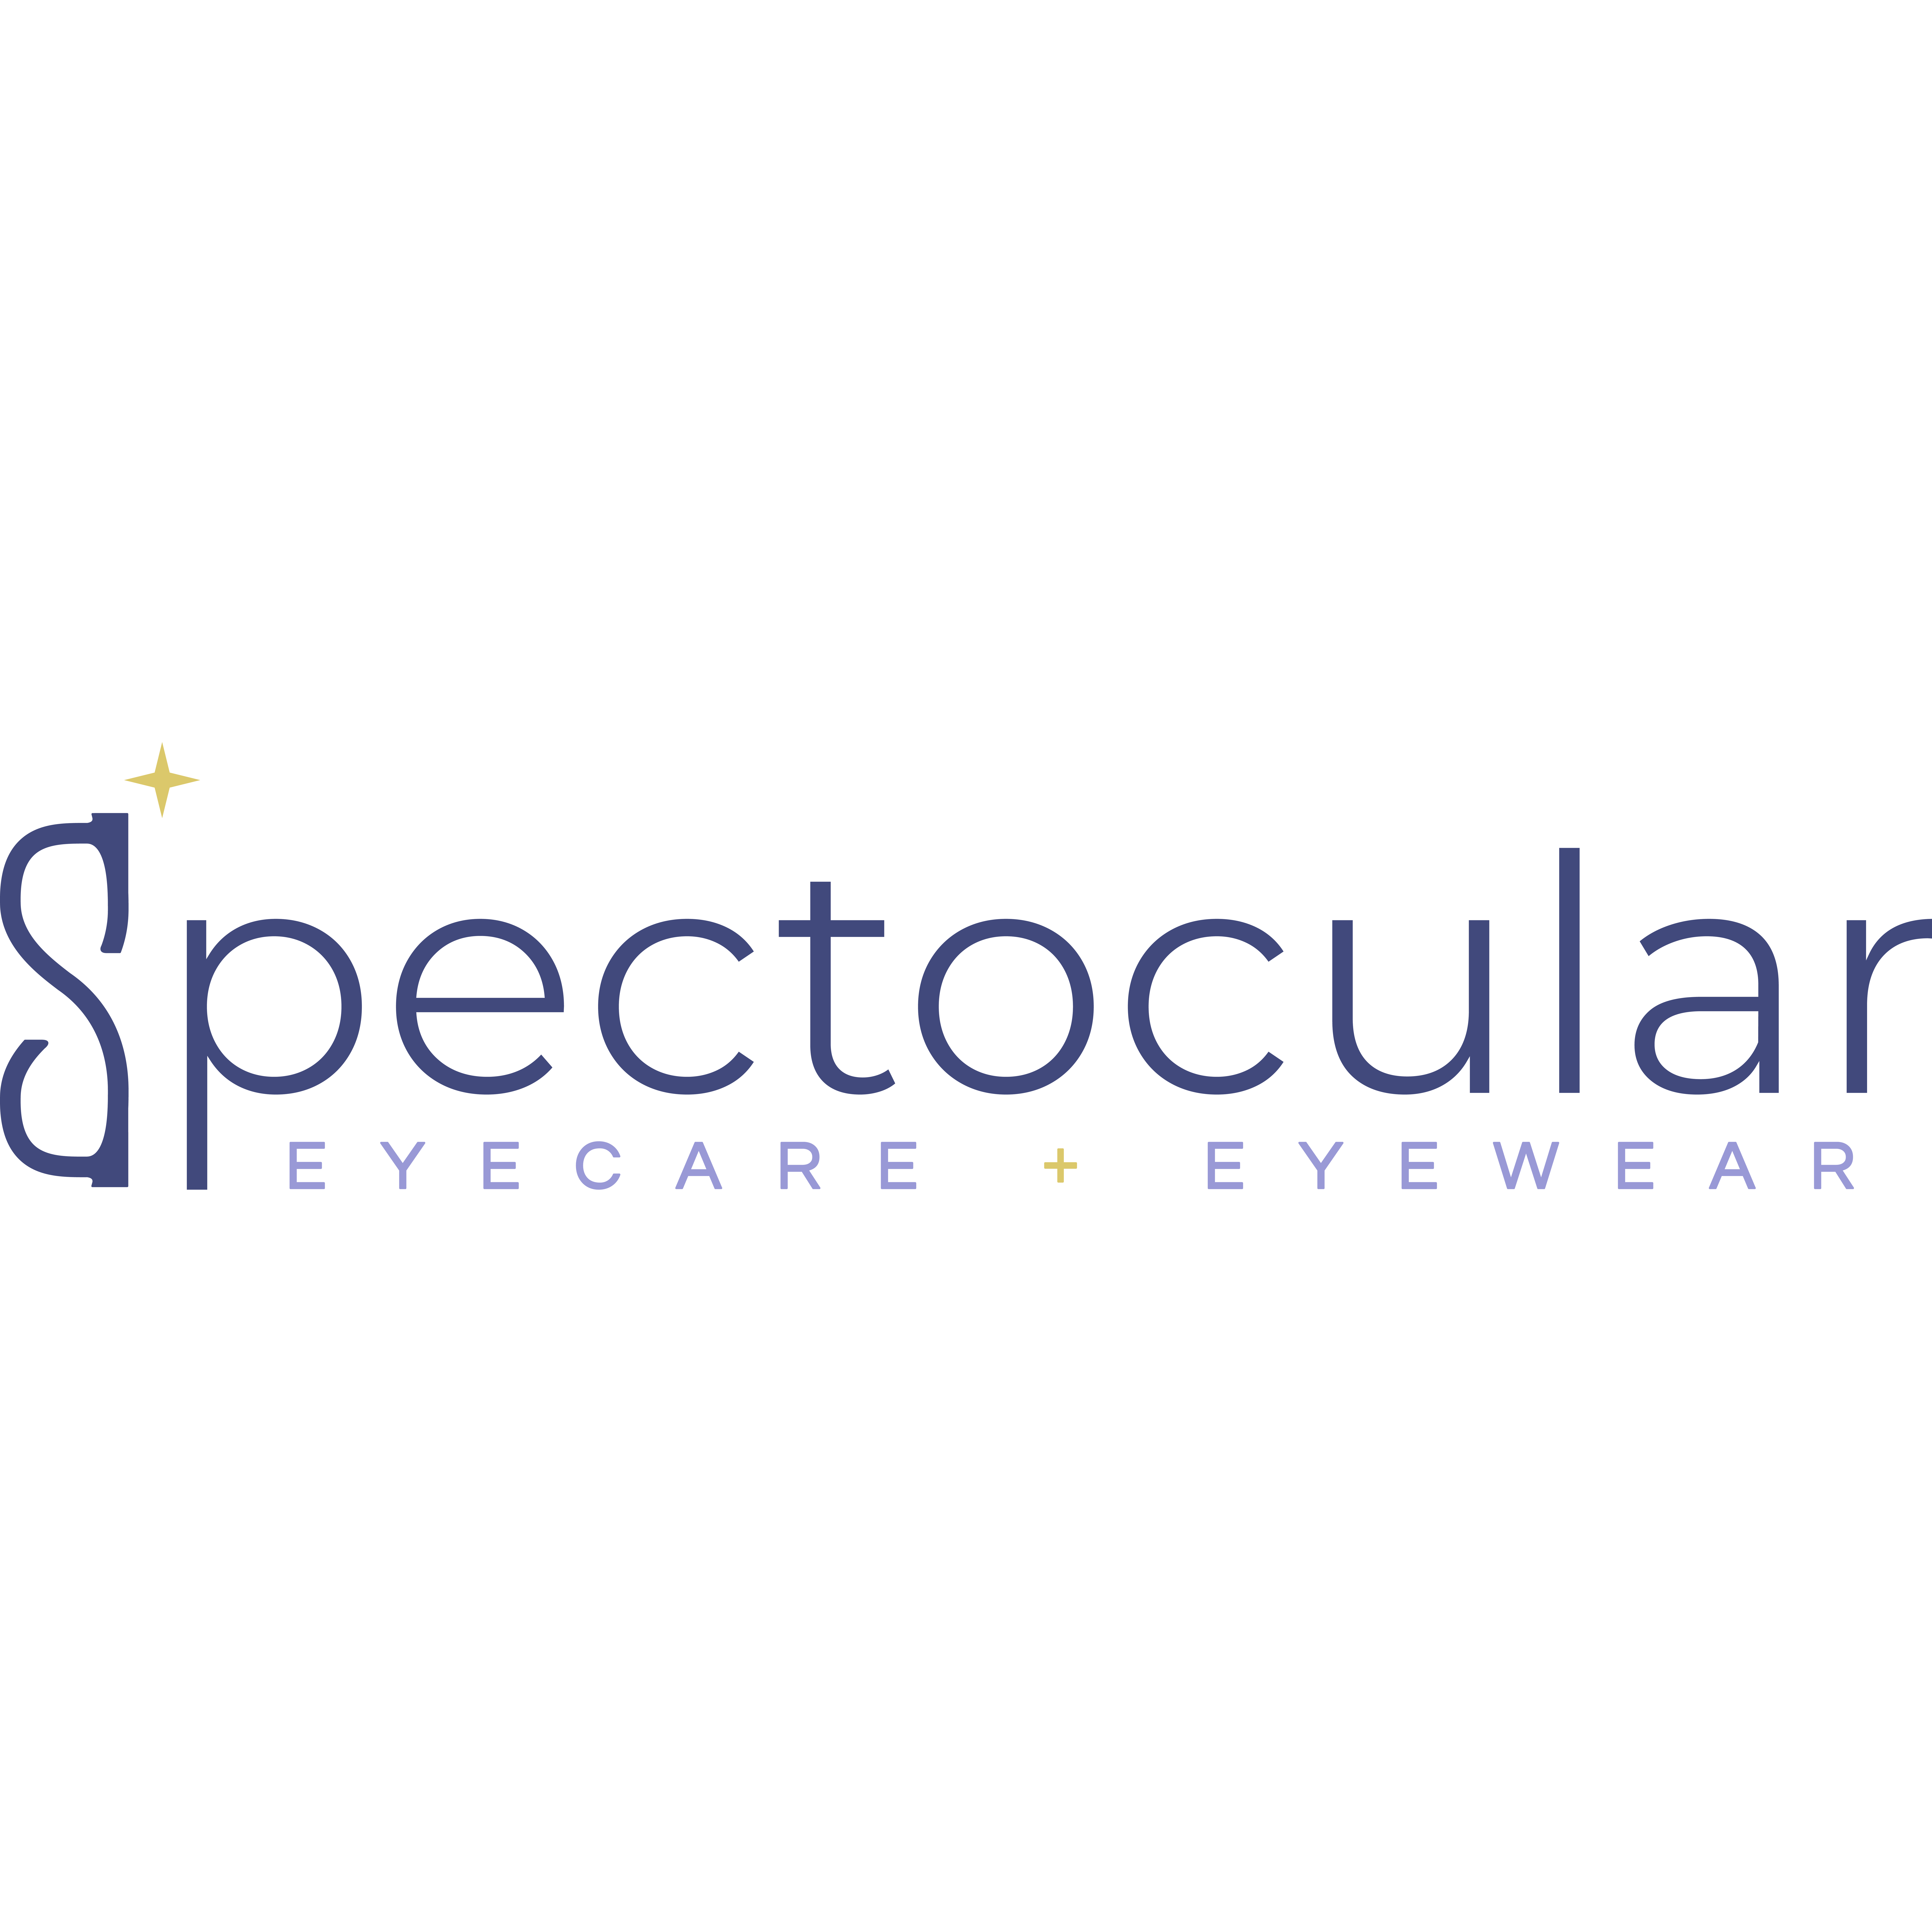 Spectocular Eyecare + Eyewear